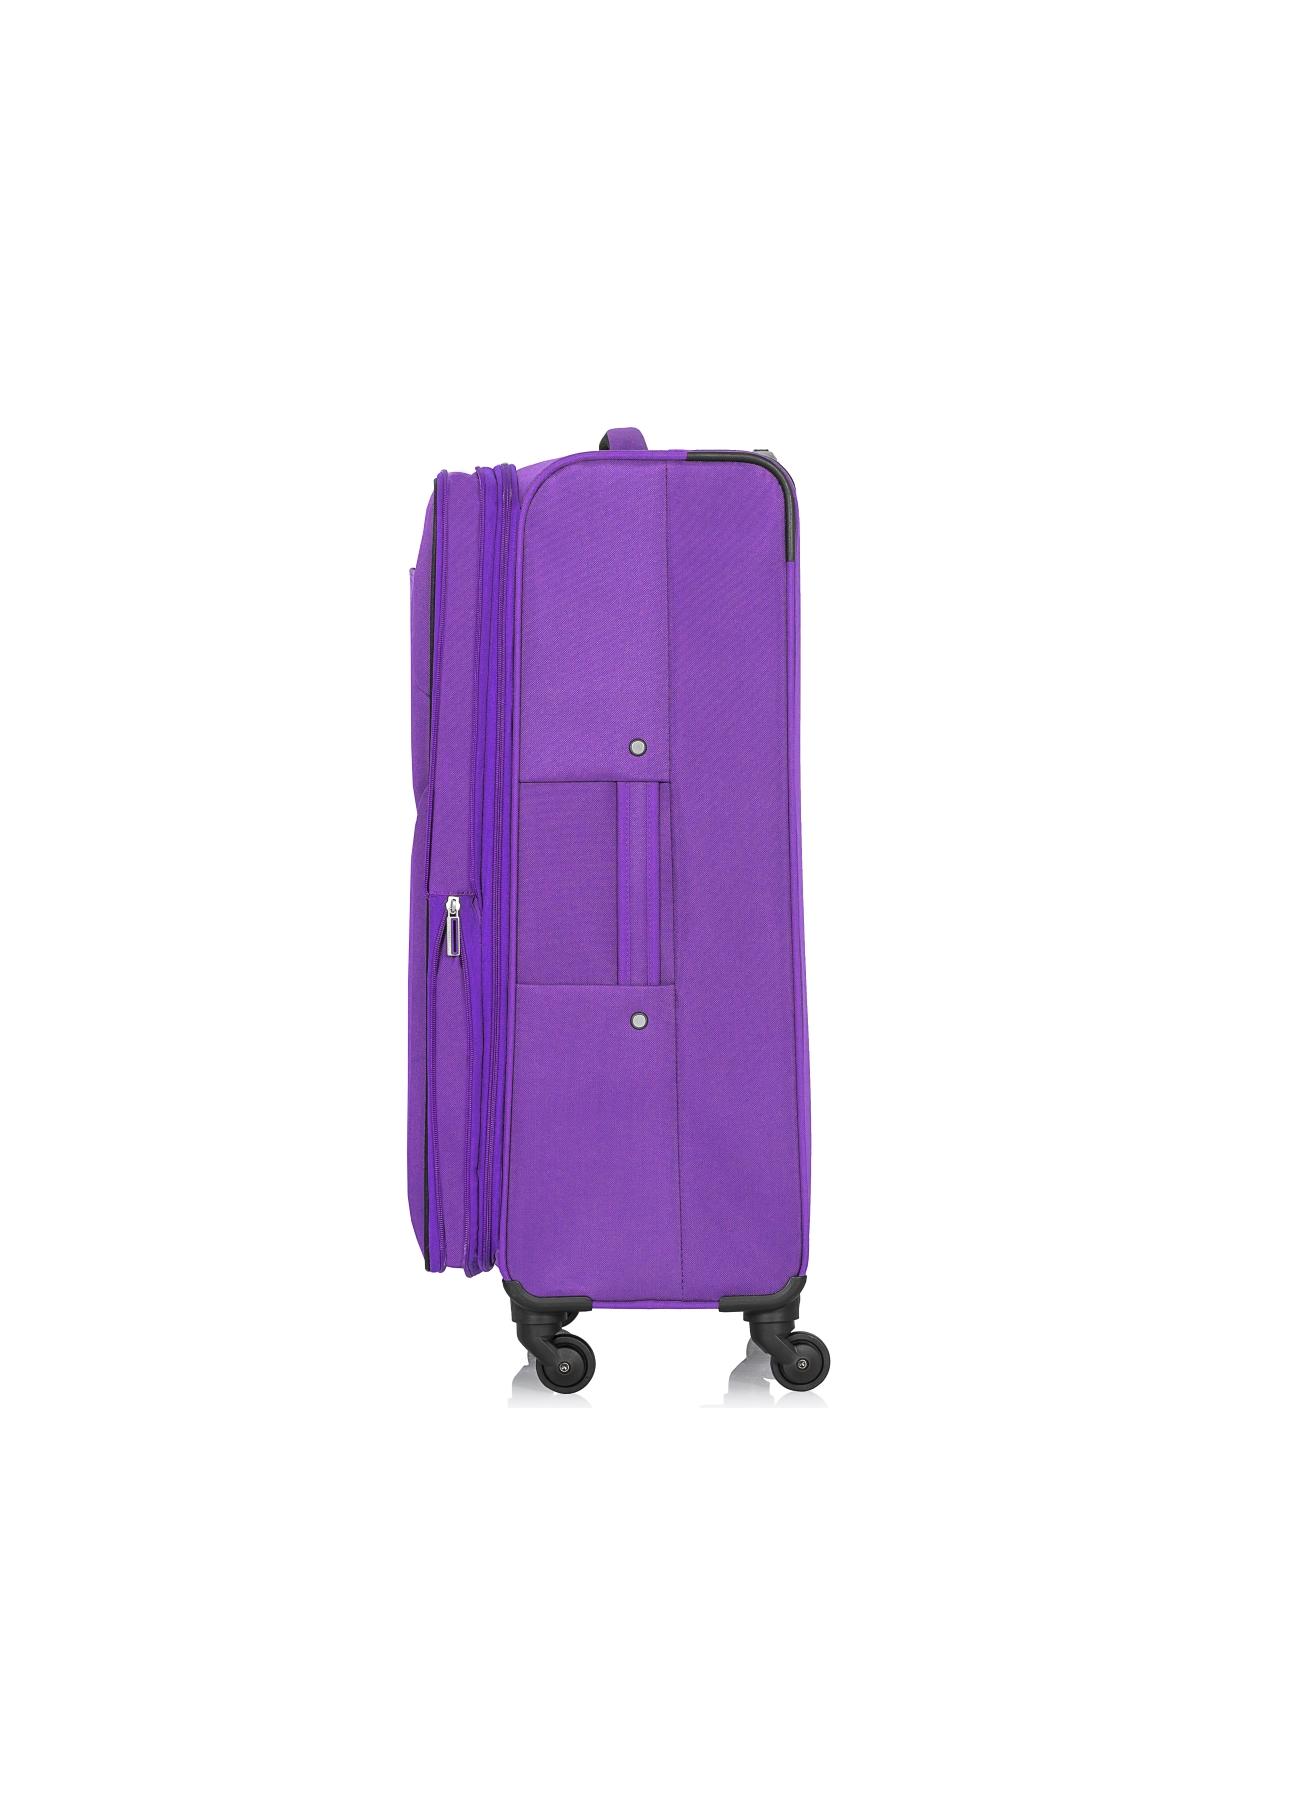 Duża walizka na kółkach WALNY-0030-72-28